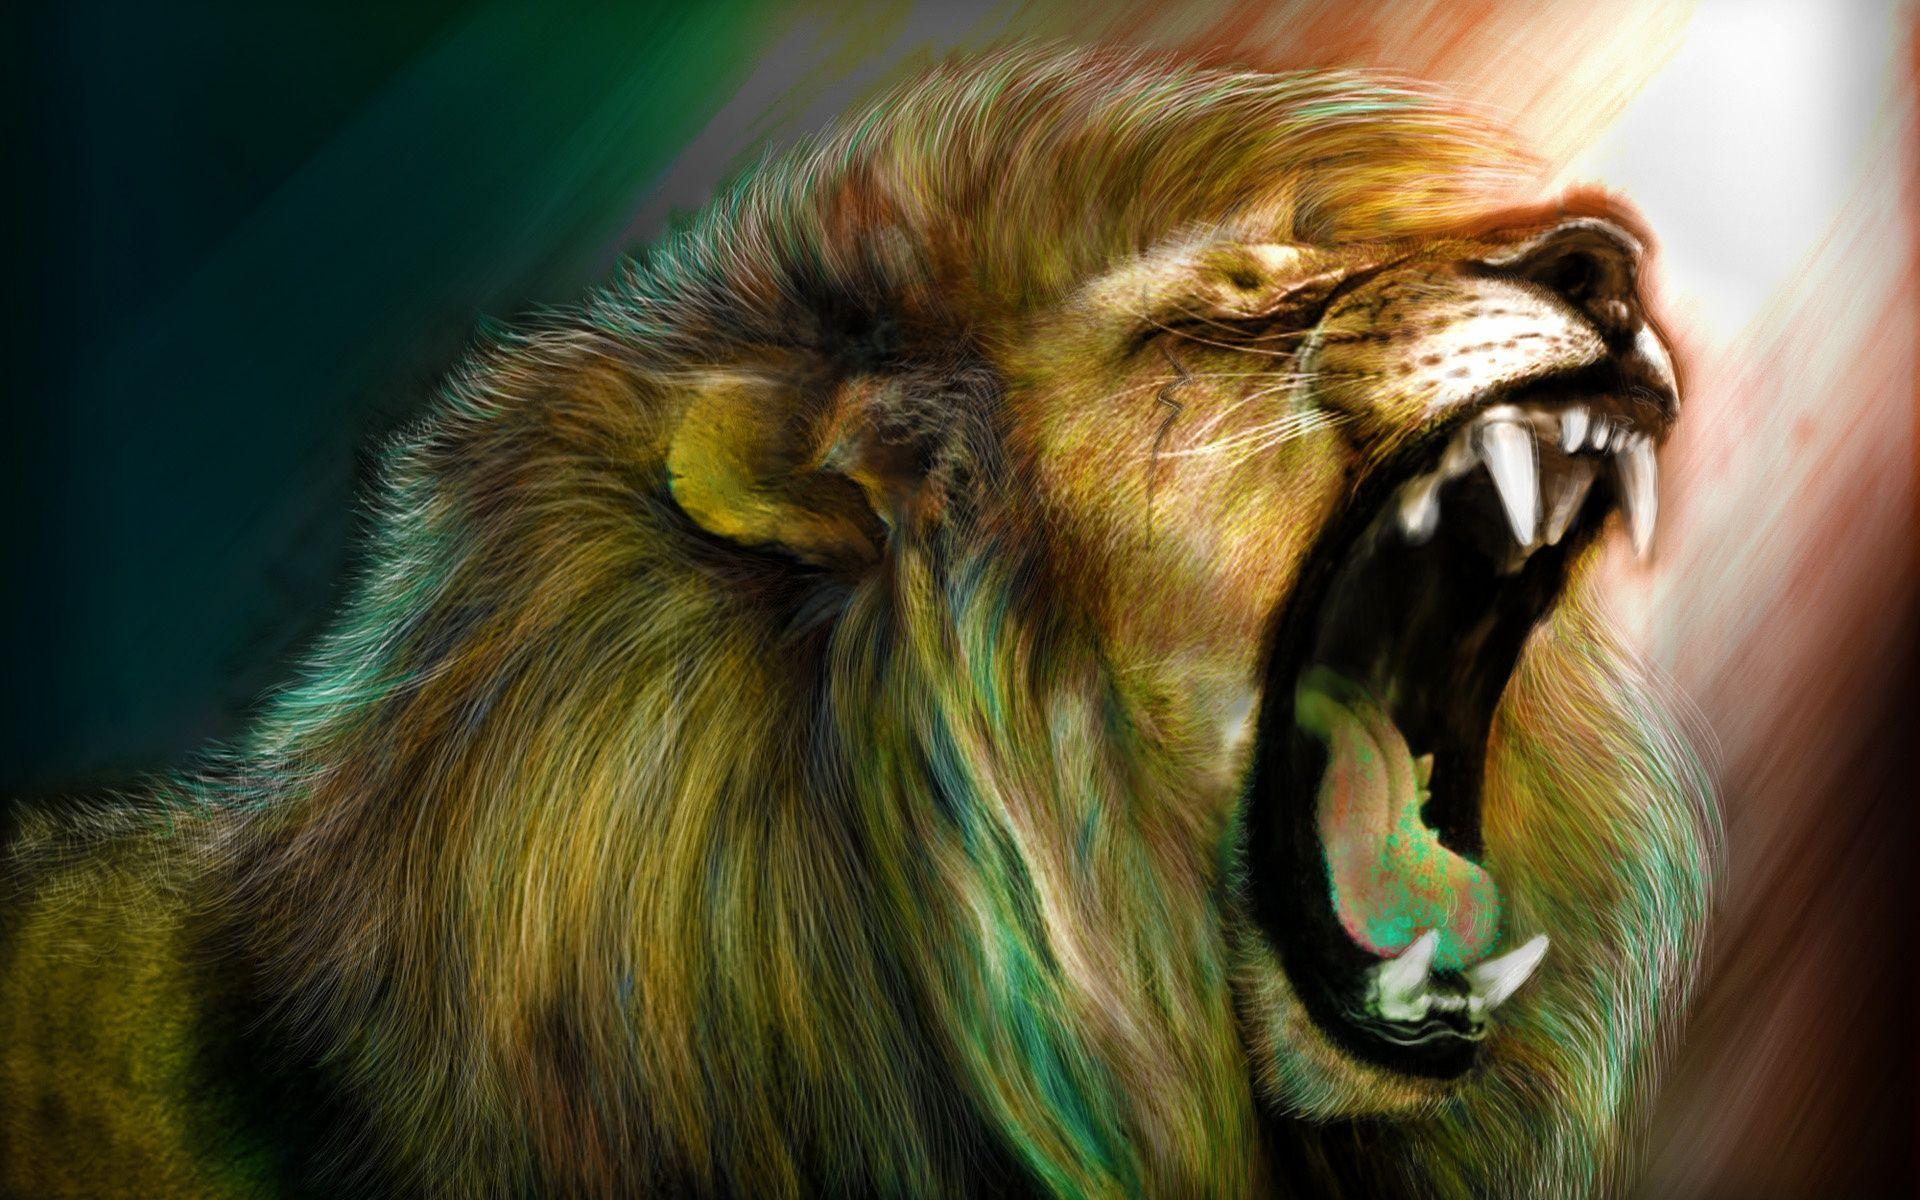 The Lions Roar 920×200 Pixels. Lion Image, Lion Wallpaper, Lion Live Wallpaper